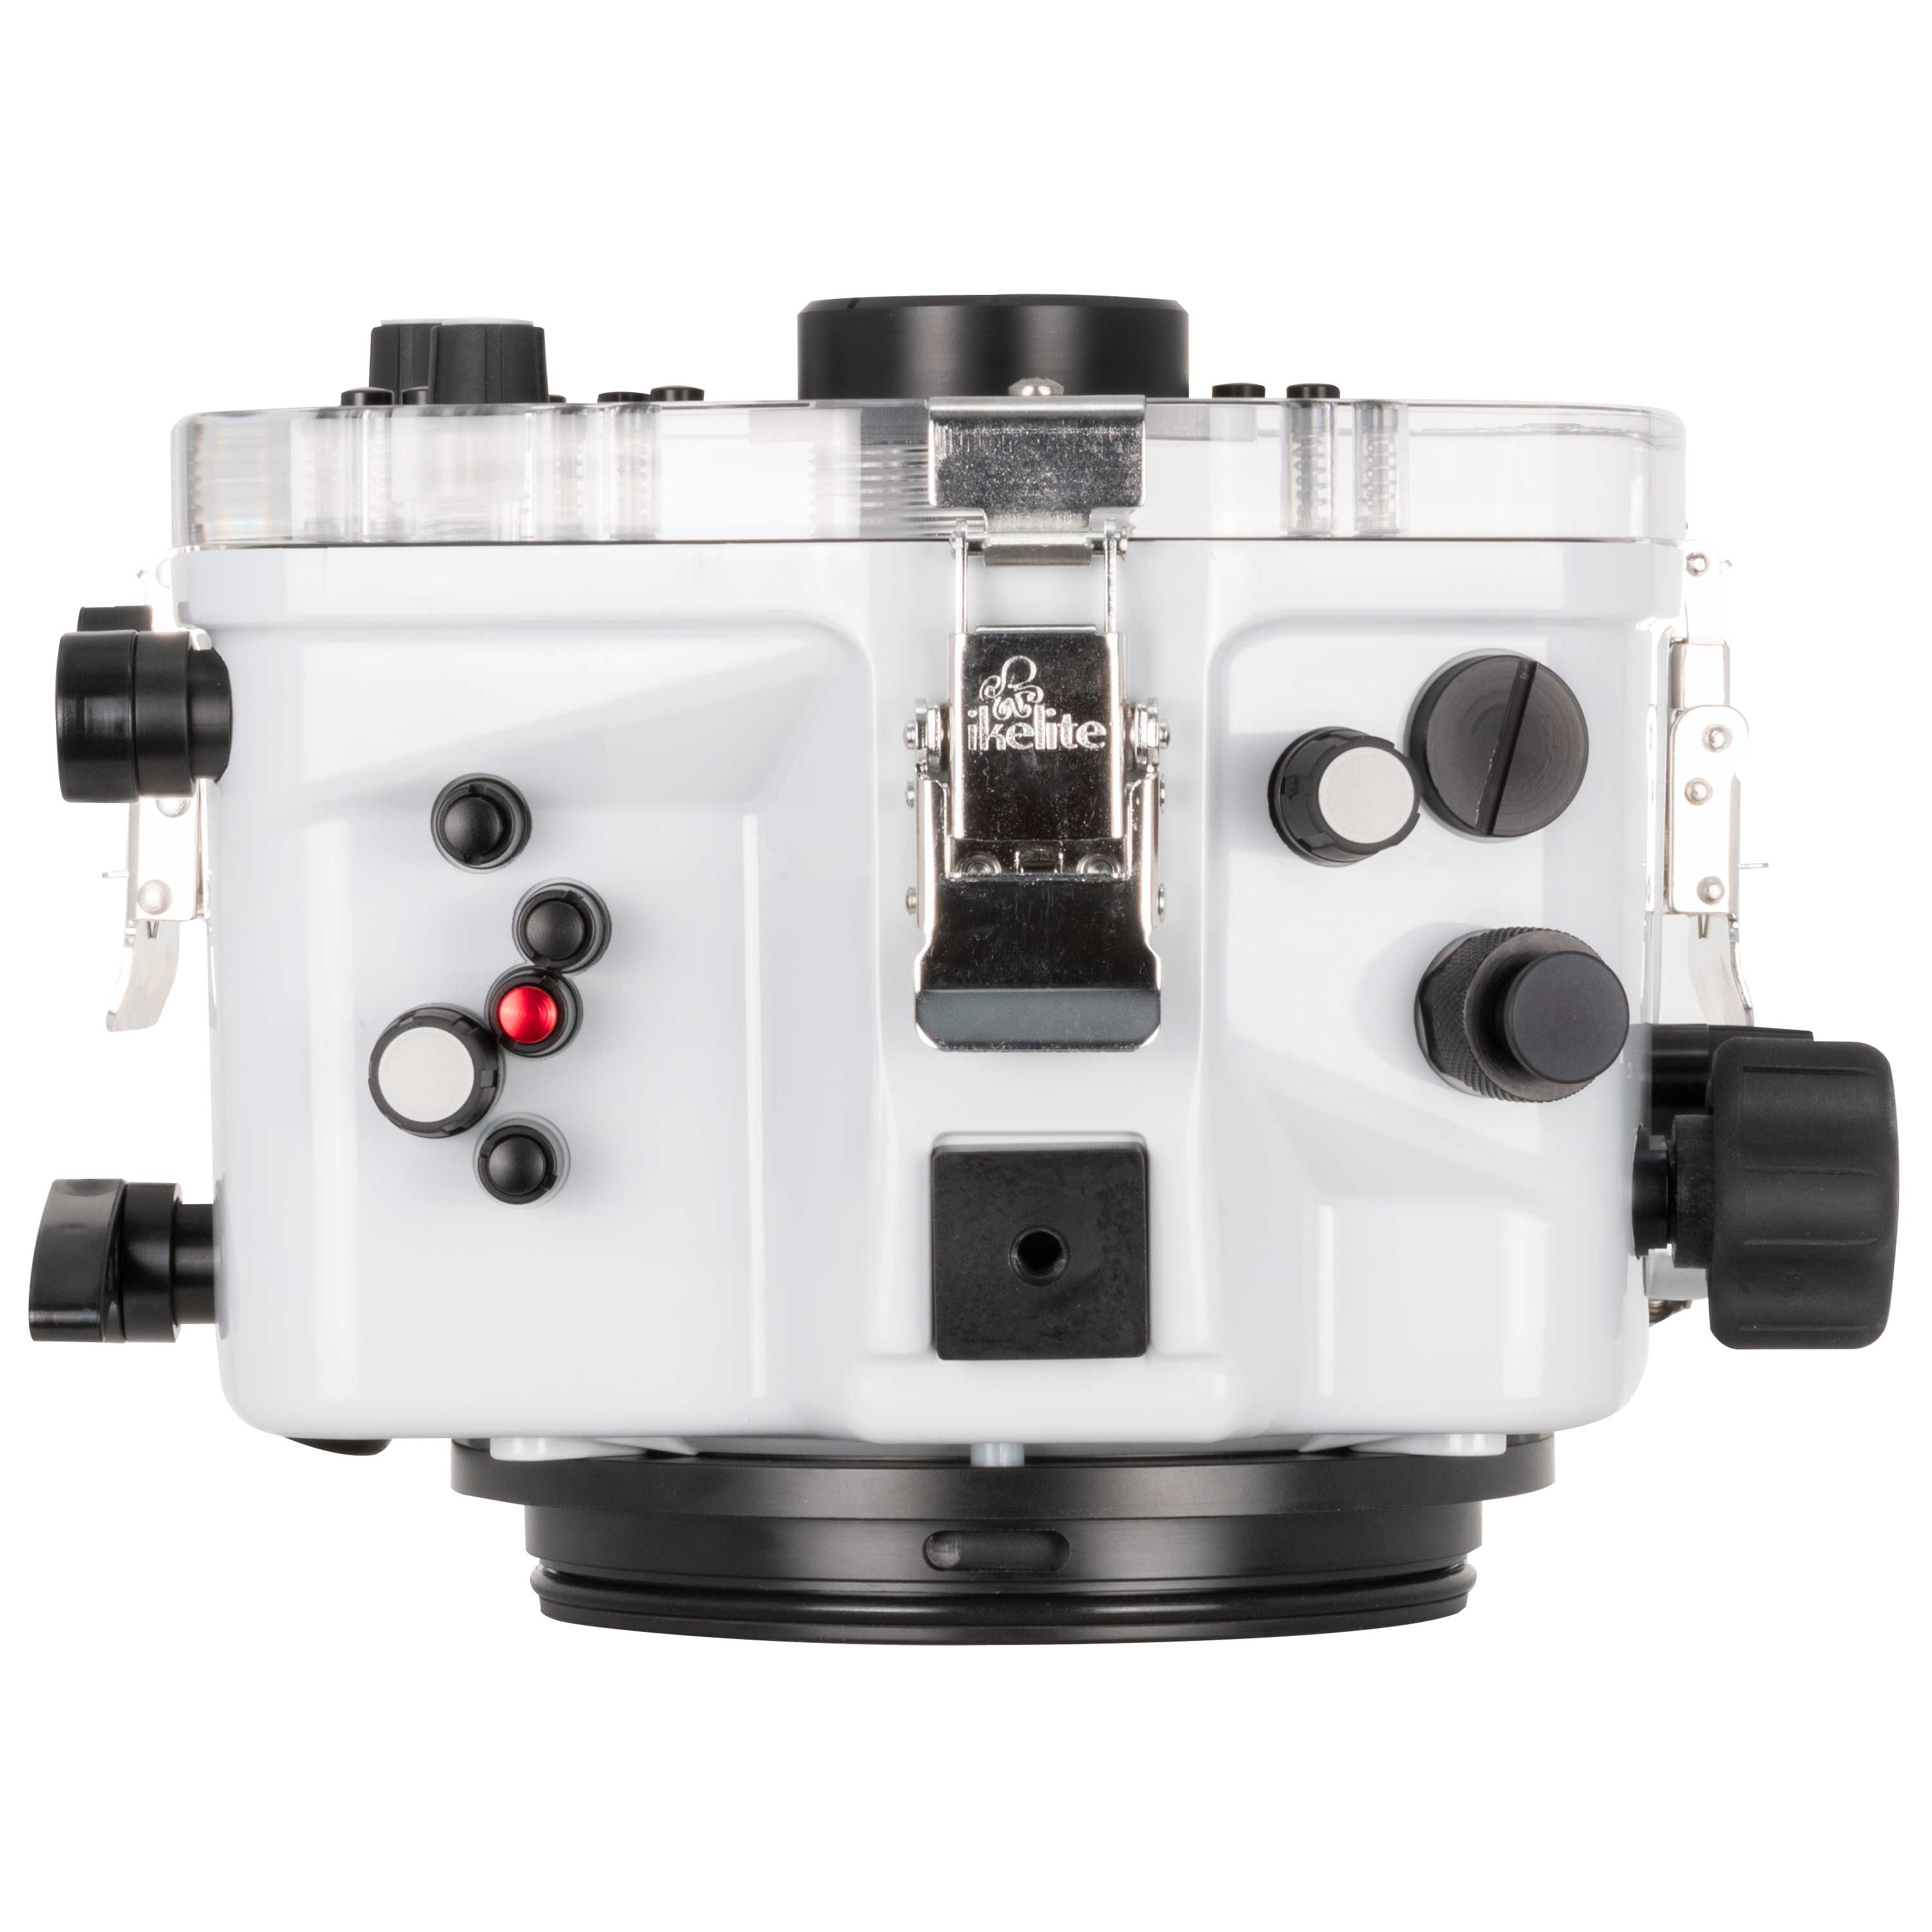 Ikelite 200DL Underwater Housing for Canon EOS R5 Mirrorless Digital Camera